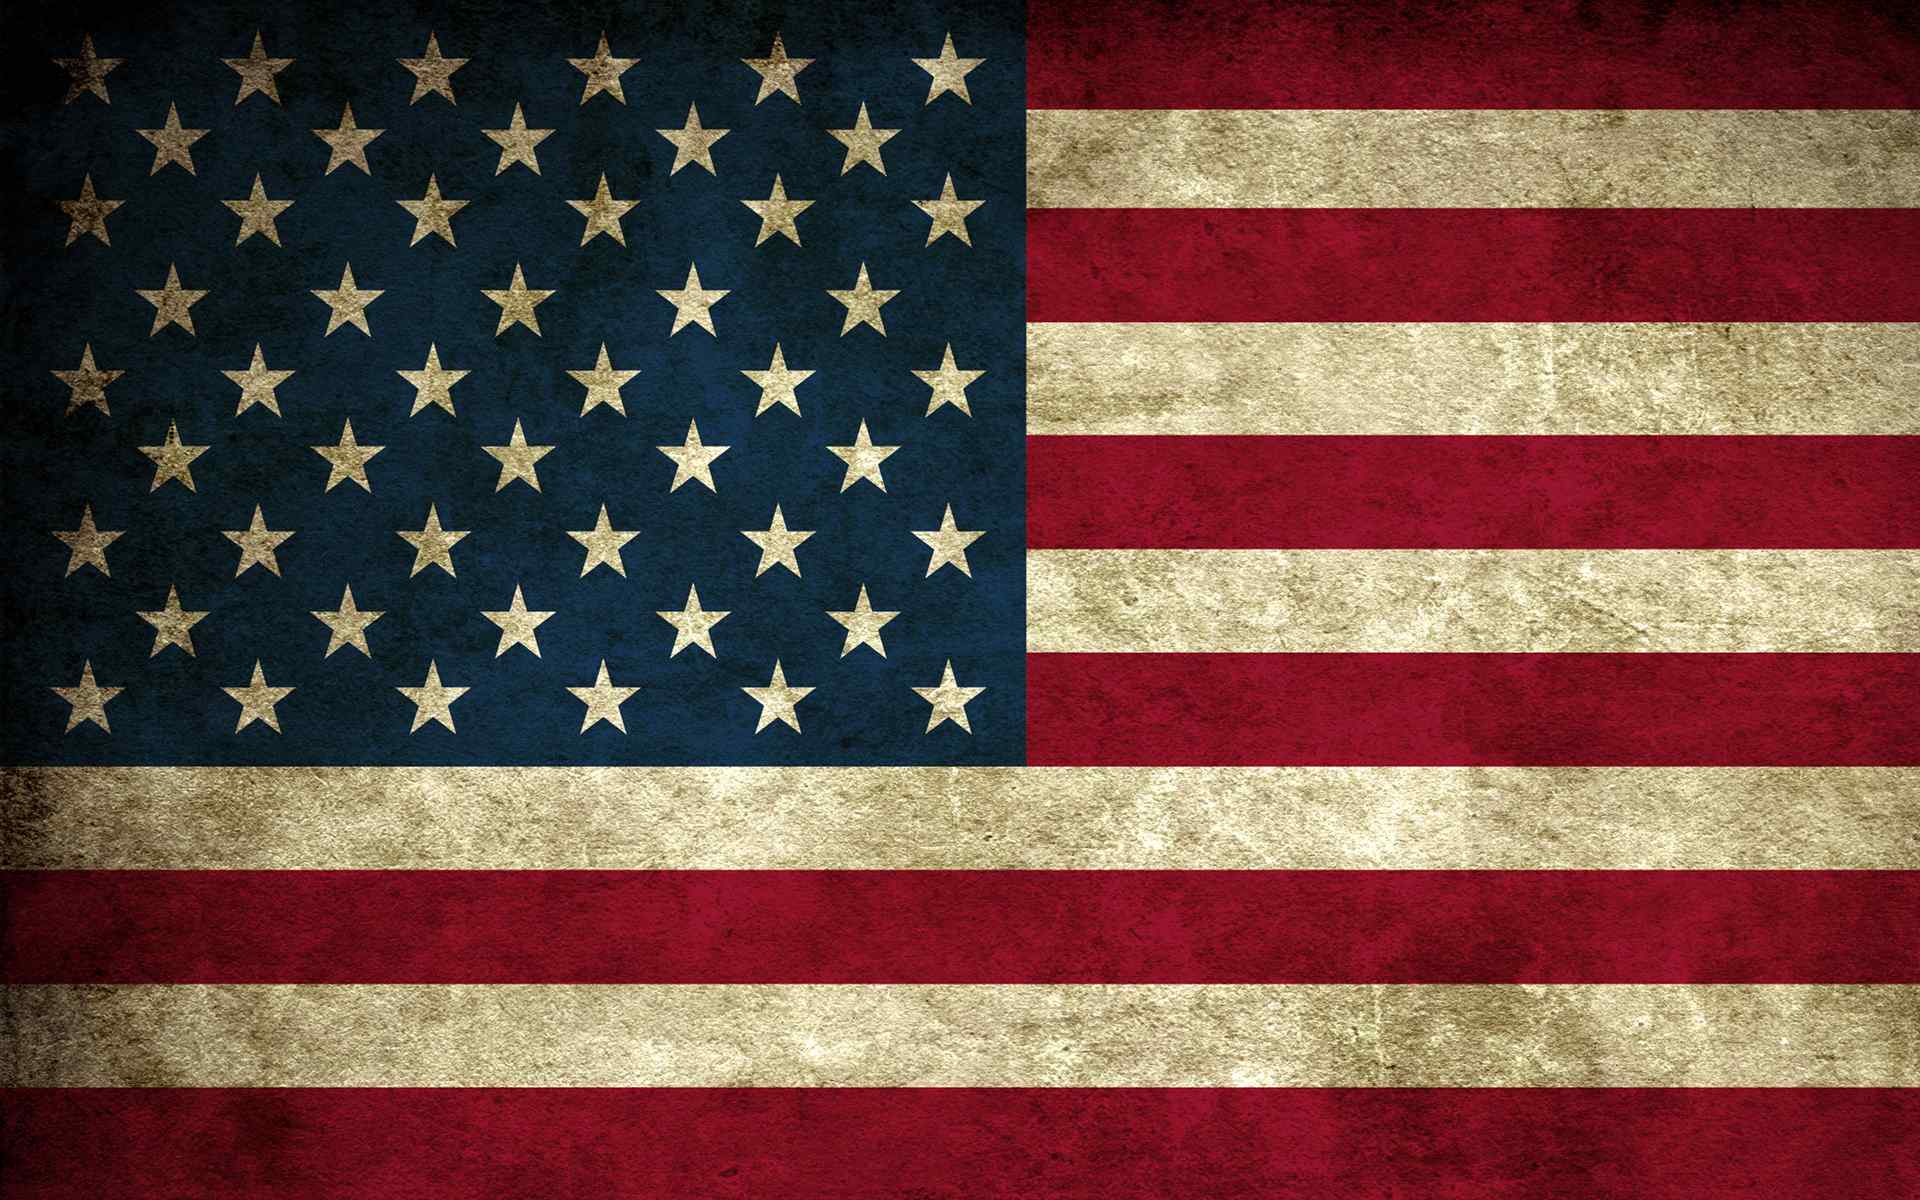 美国国旗壁纸